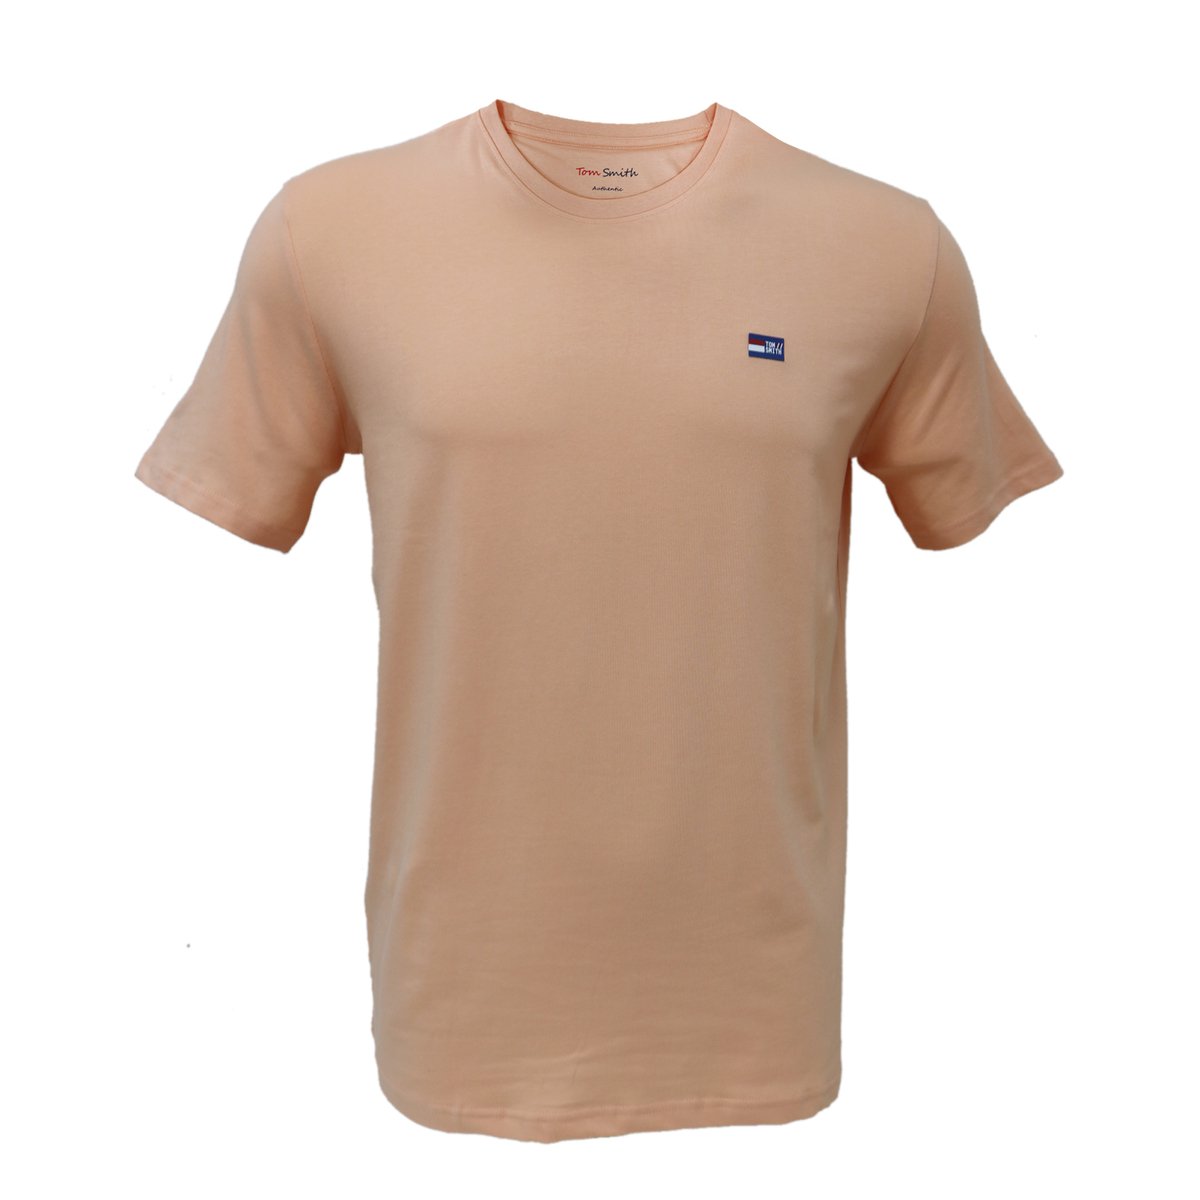 Tom Smith Basic Round Neck T-Shirt Salmon - L